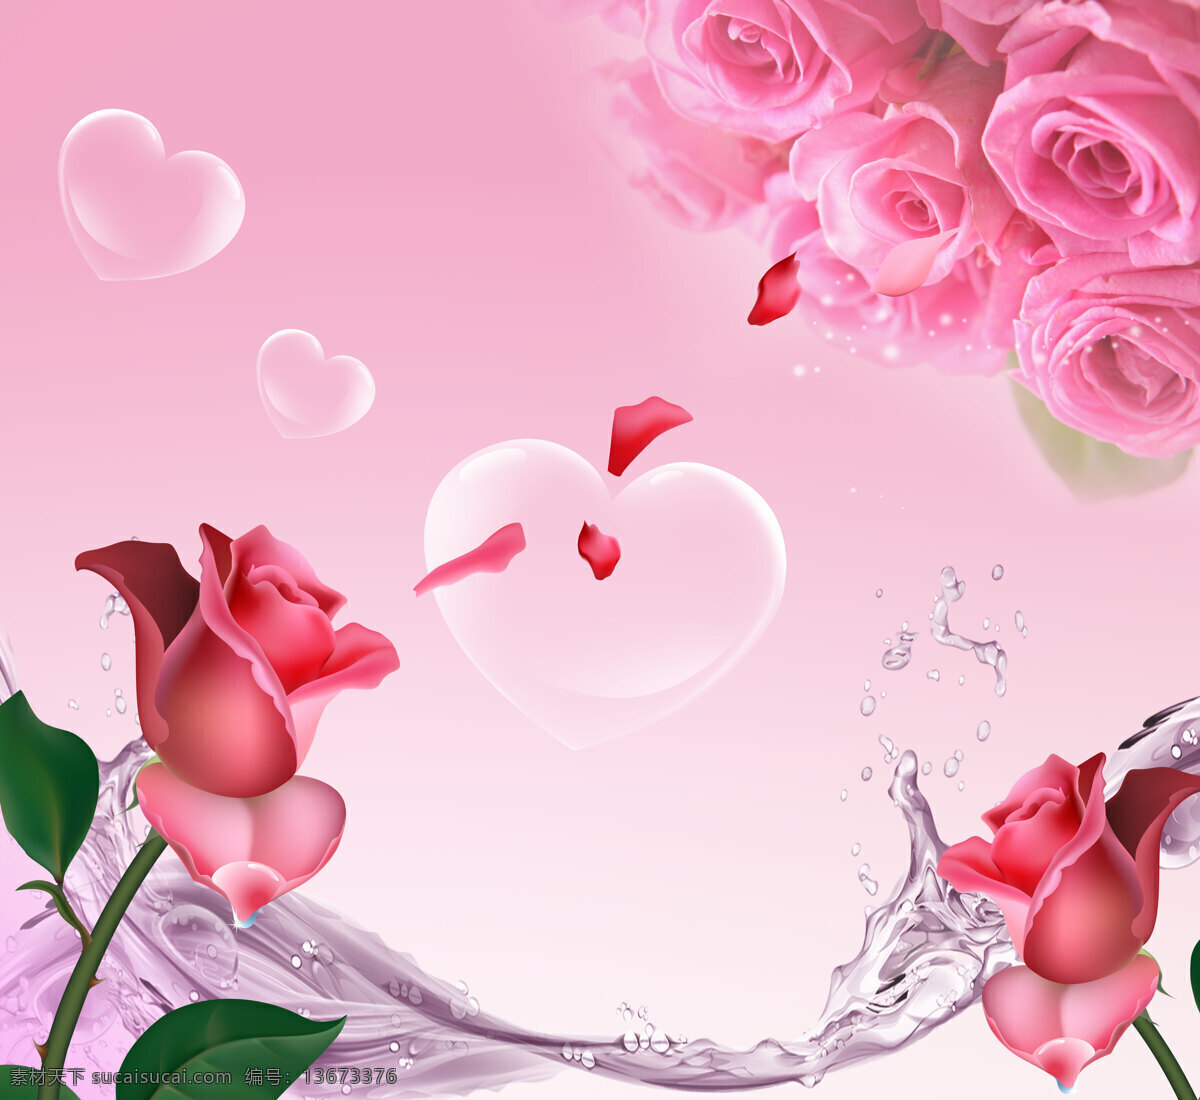 爱心 气泡 玫瑰 背景 插画 手绘 背景墙 底纹 鲜花 花卉 爱心图片 生活百科